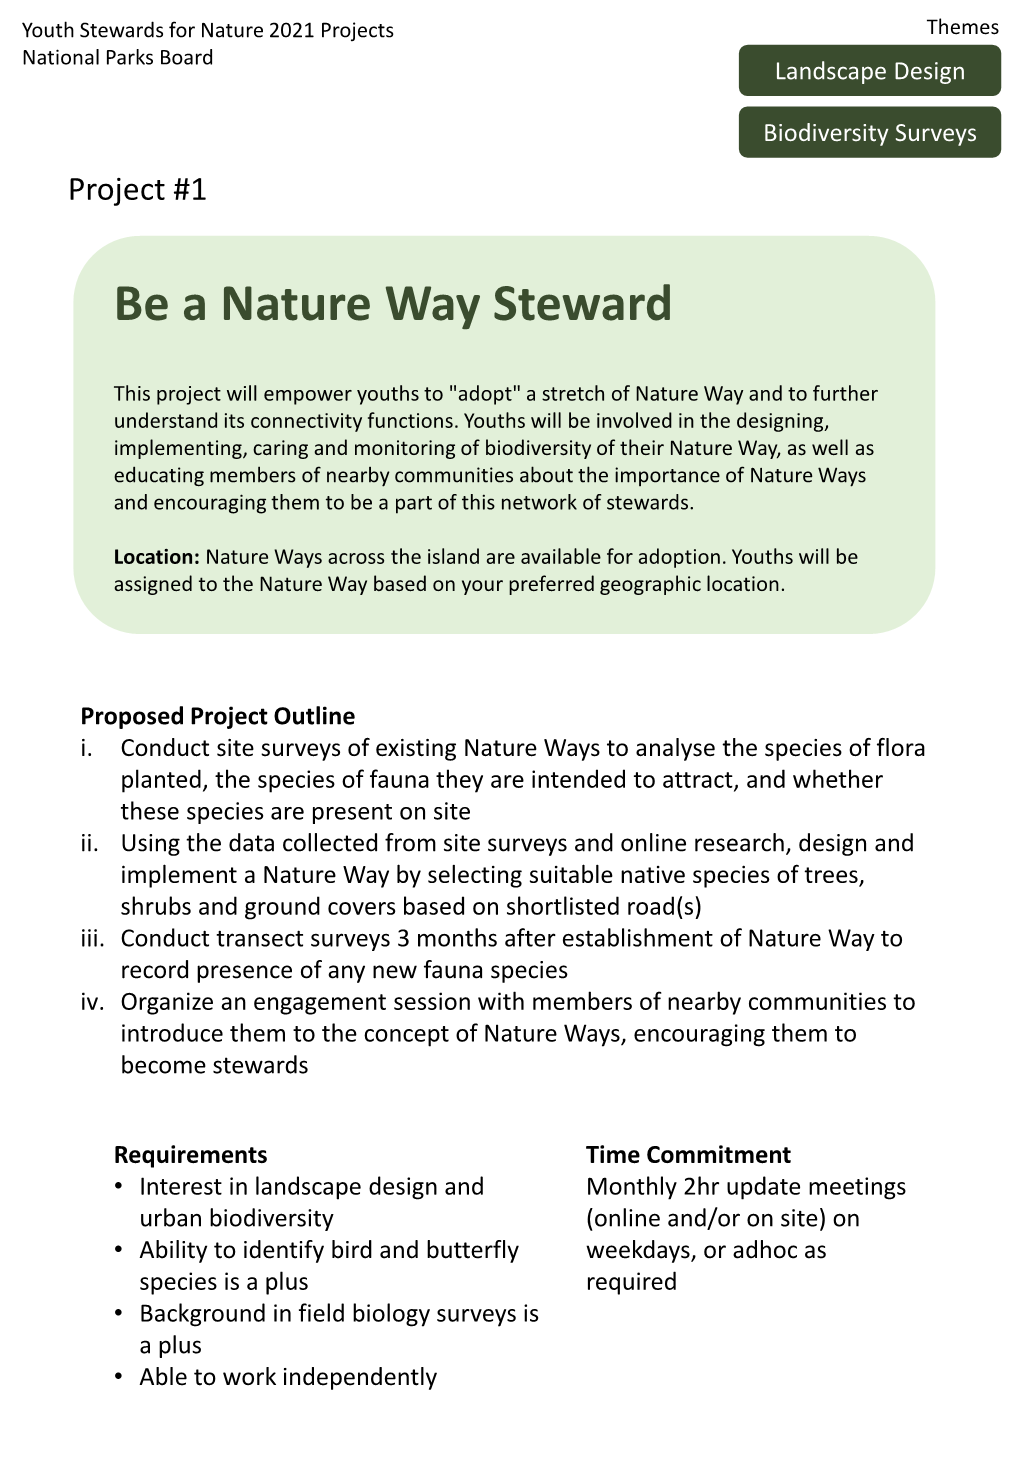 Be a Nature Way Steward